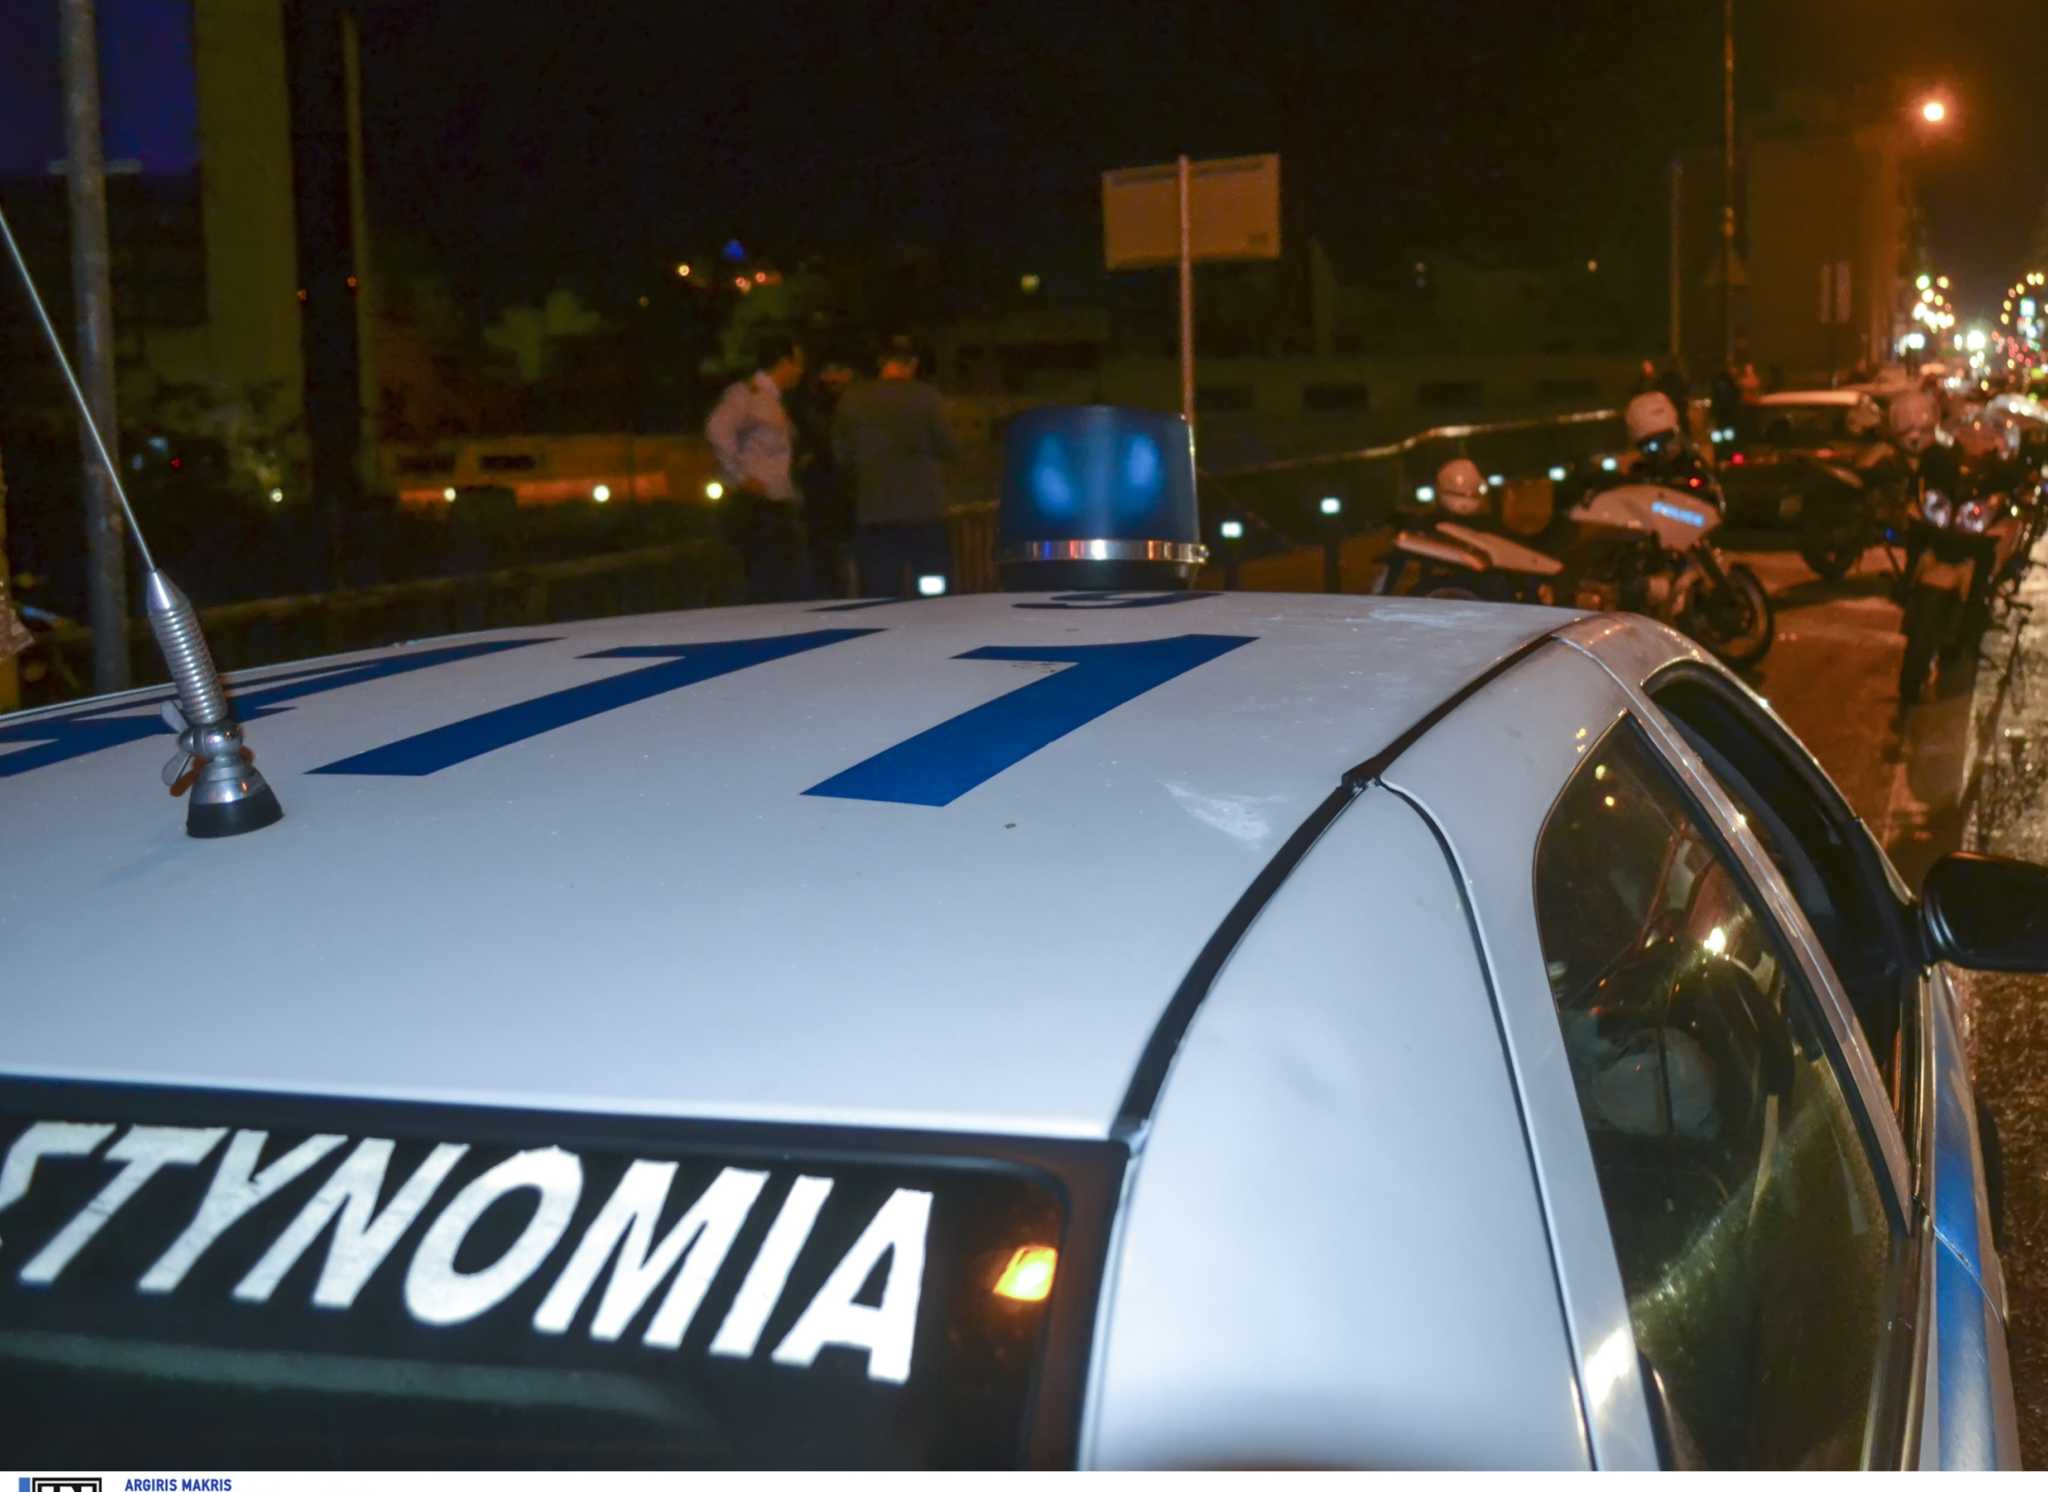 Θεσσαλονίκη: Μπούκαραν με βαριοπούλες στο κατάστημα και άρπαξαν τα εμπορεύματα – Το χτύπημα που ακολούθησε